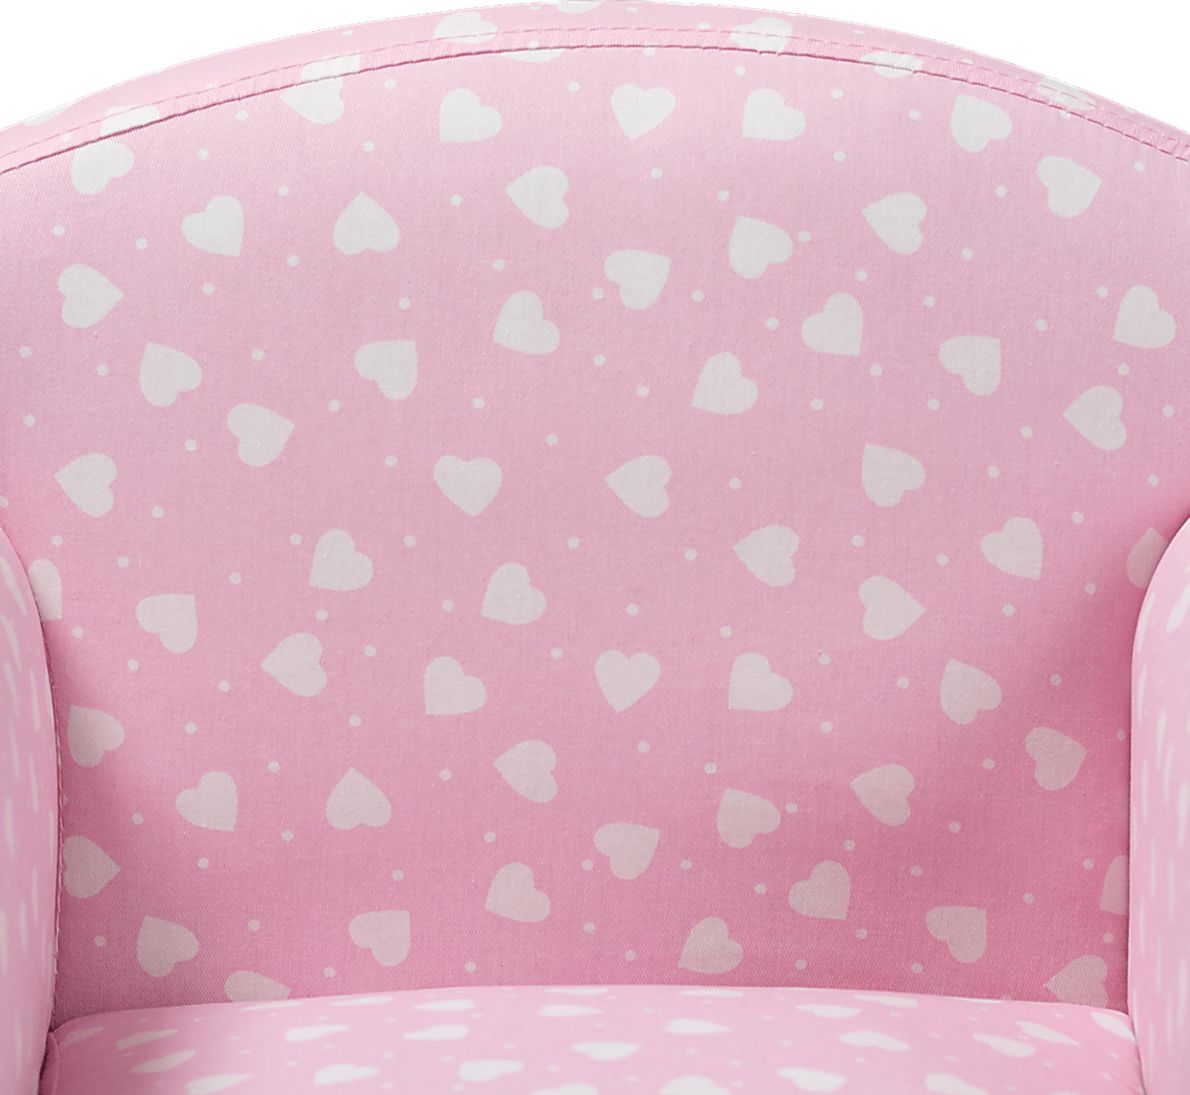 Blaffer Pink Accent Chair